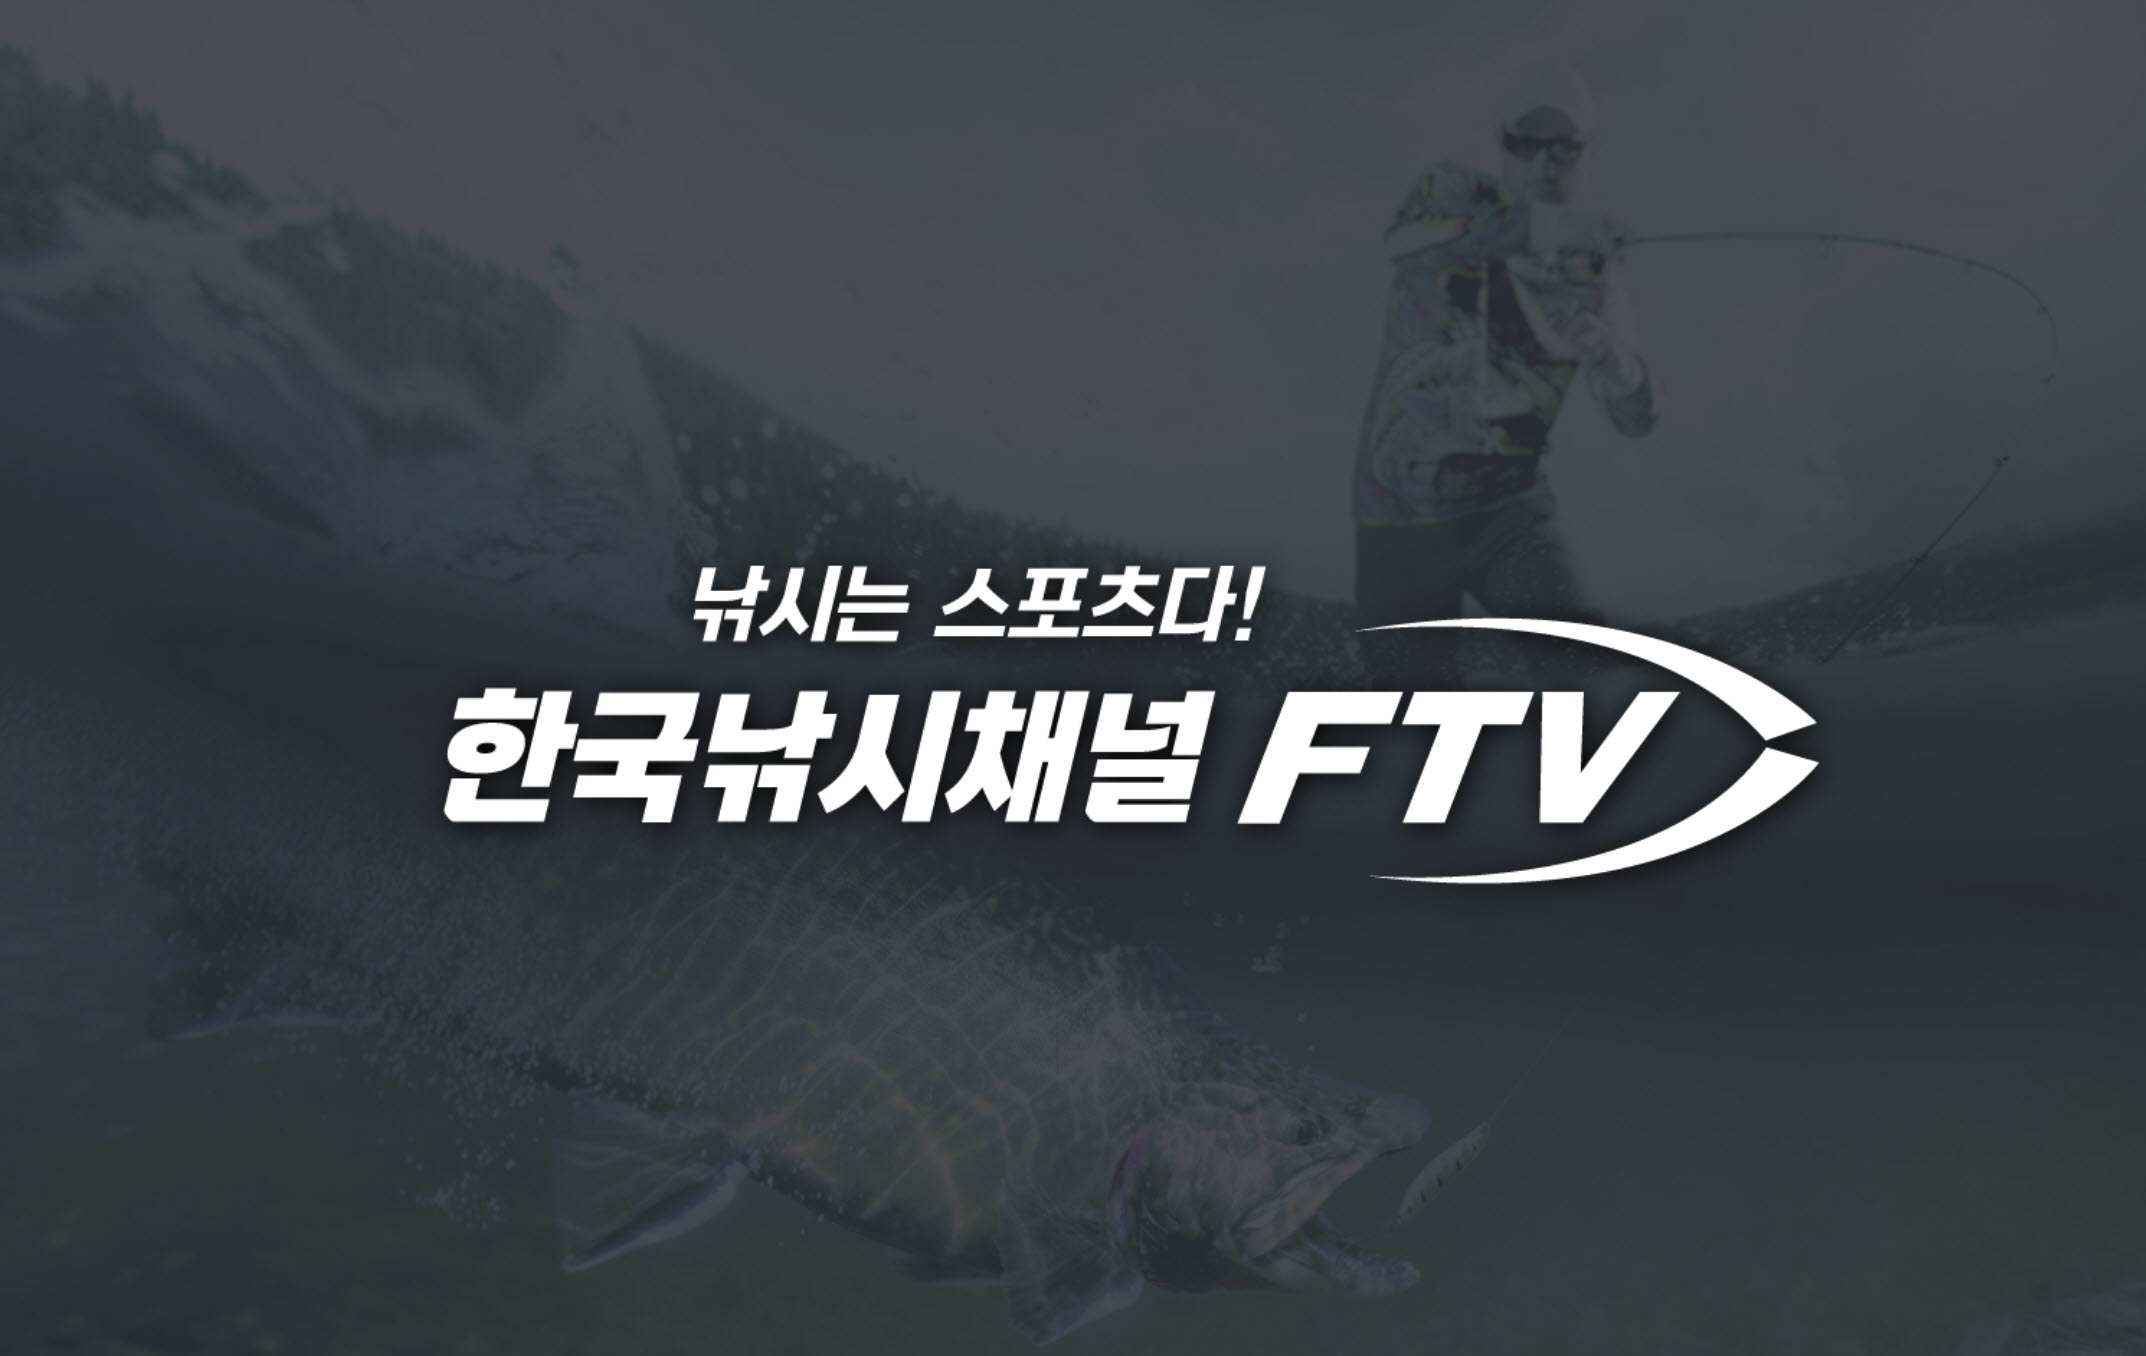 FTV, 방통위 제작역량 평가서 6년 연속 ‘매우우수’ 등급 쾌거